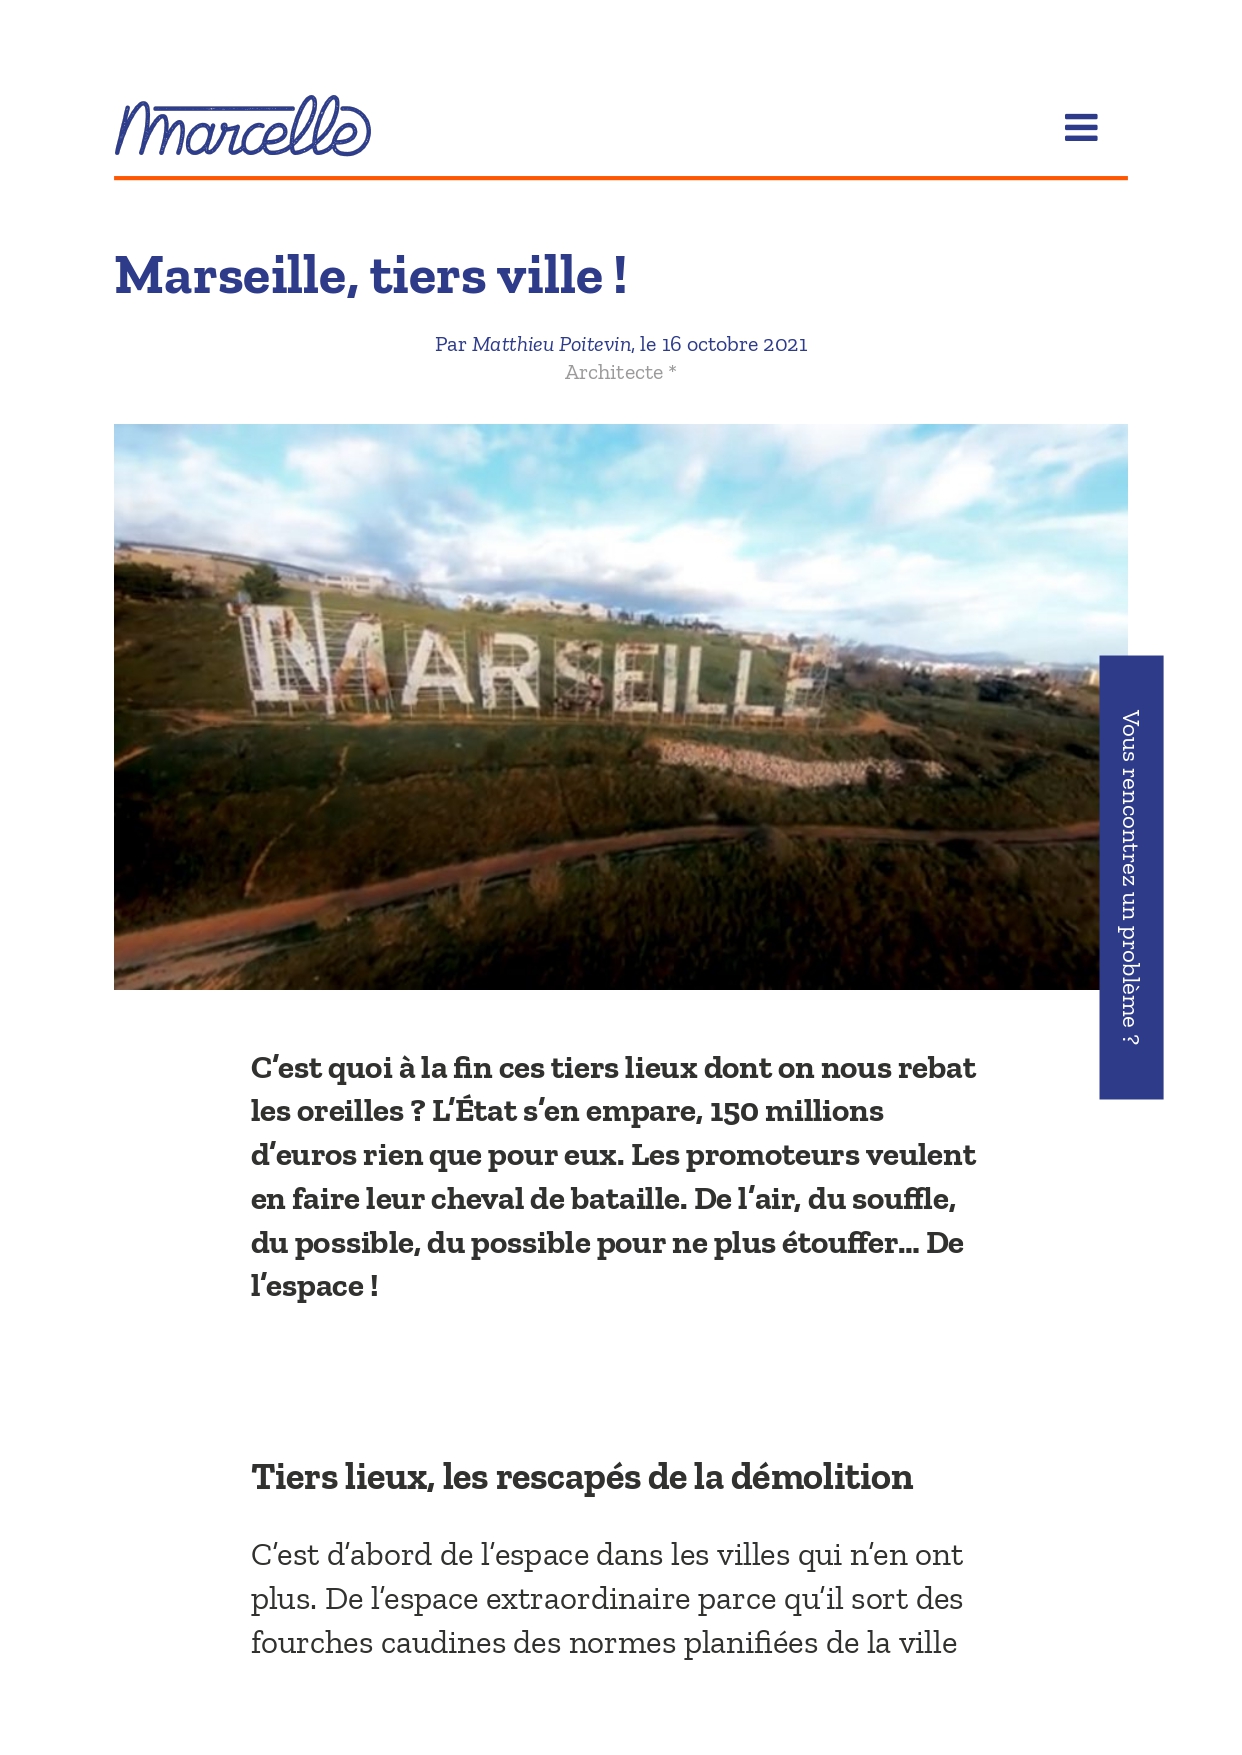 Marseille, tiers ville ! par Matthieu Poitevin